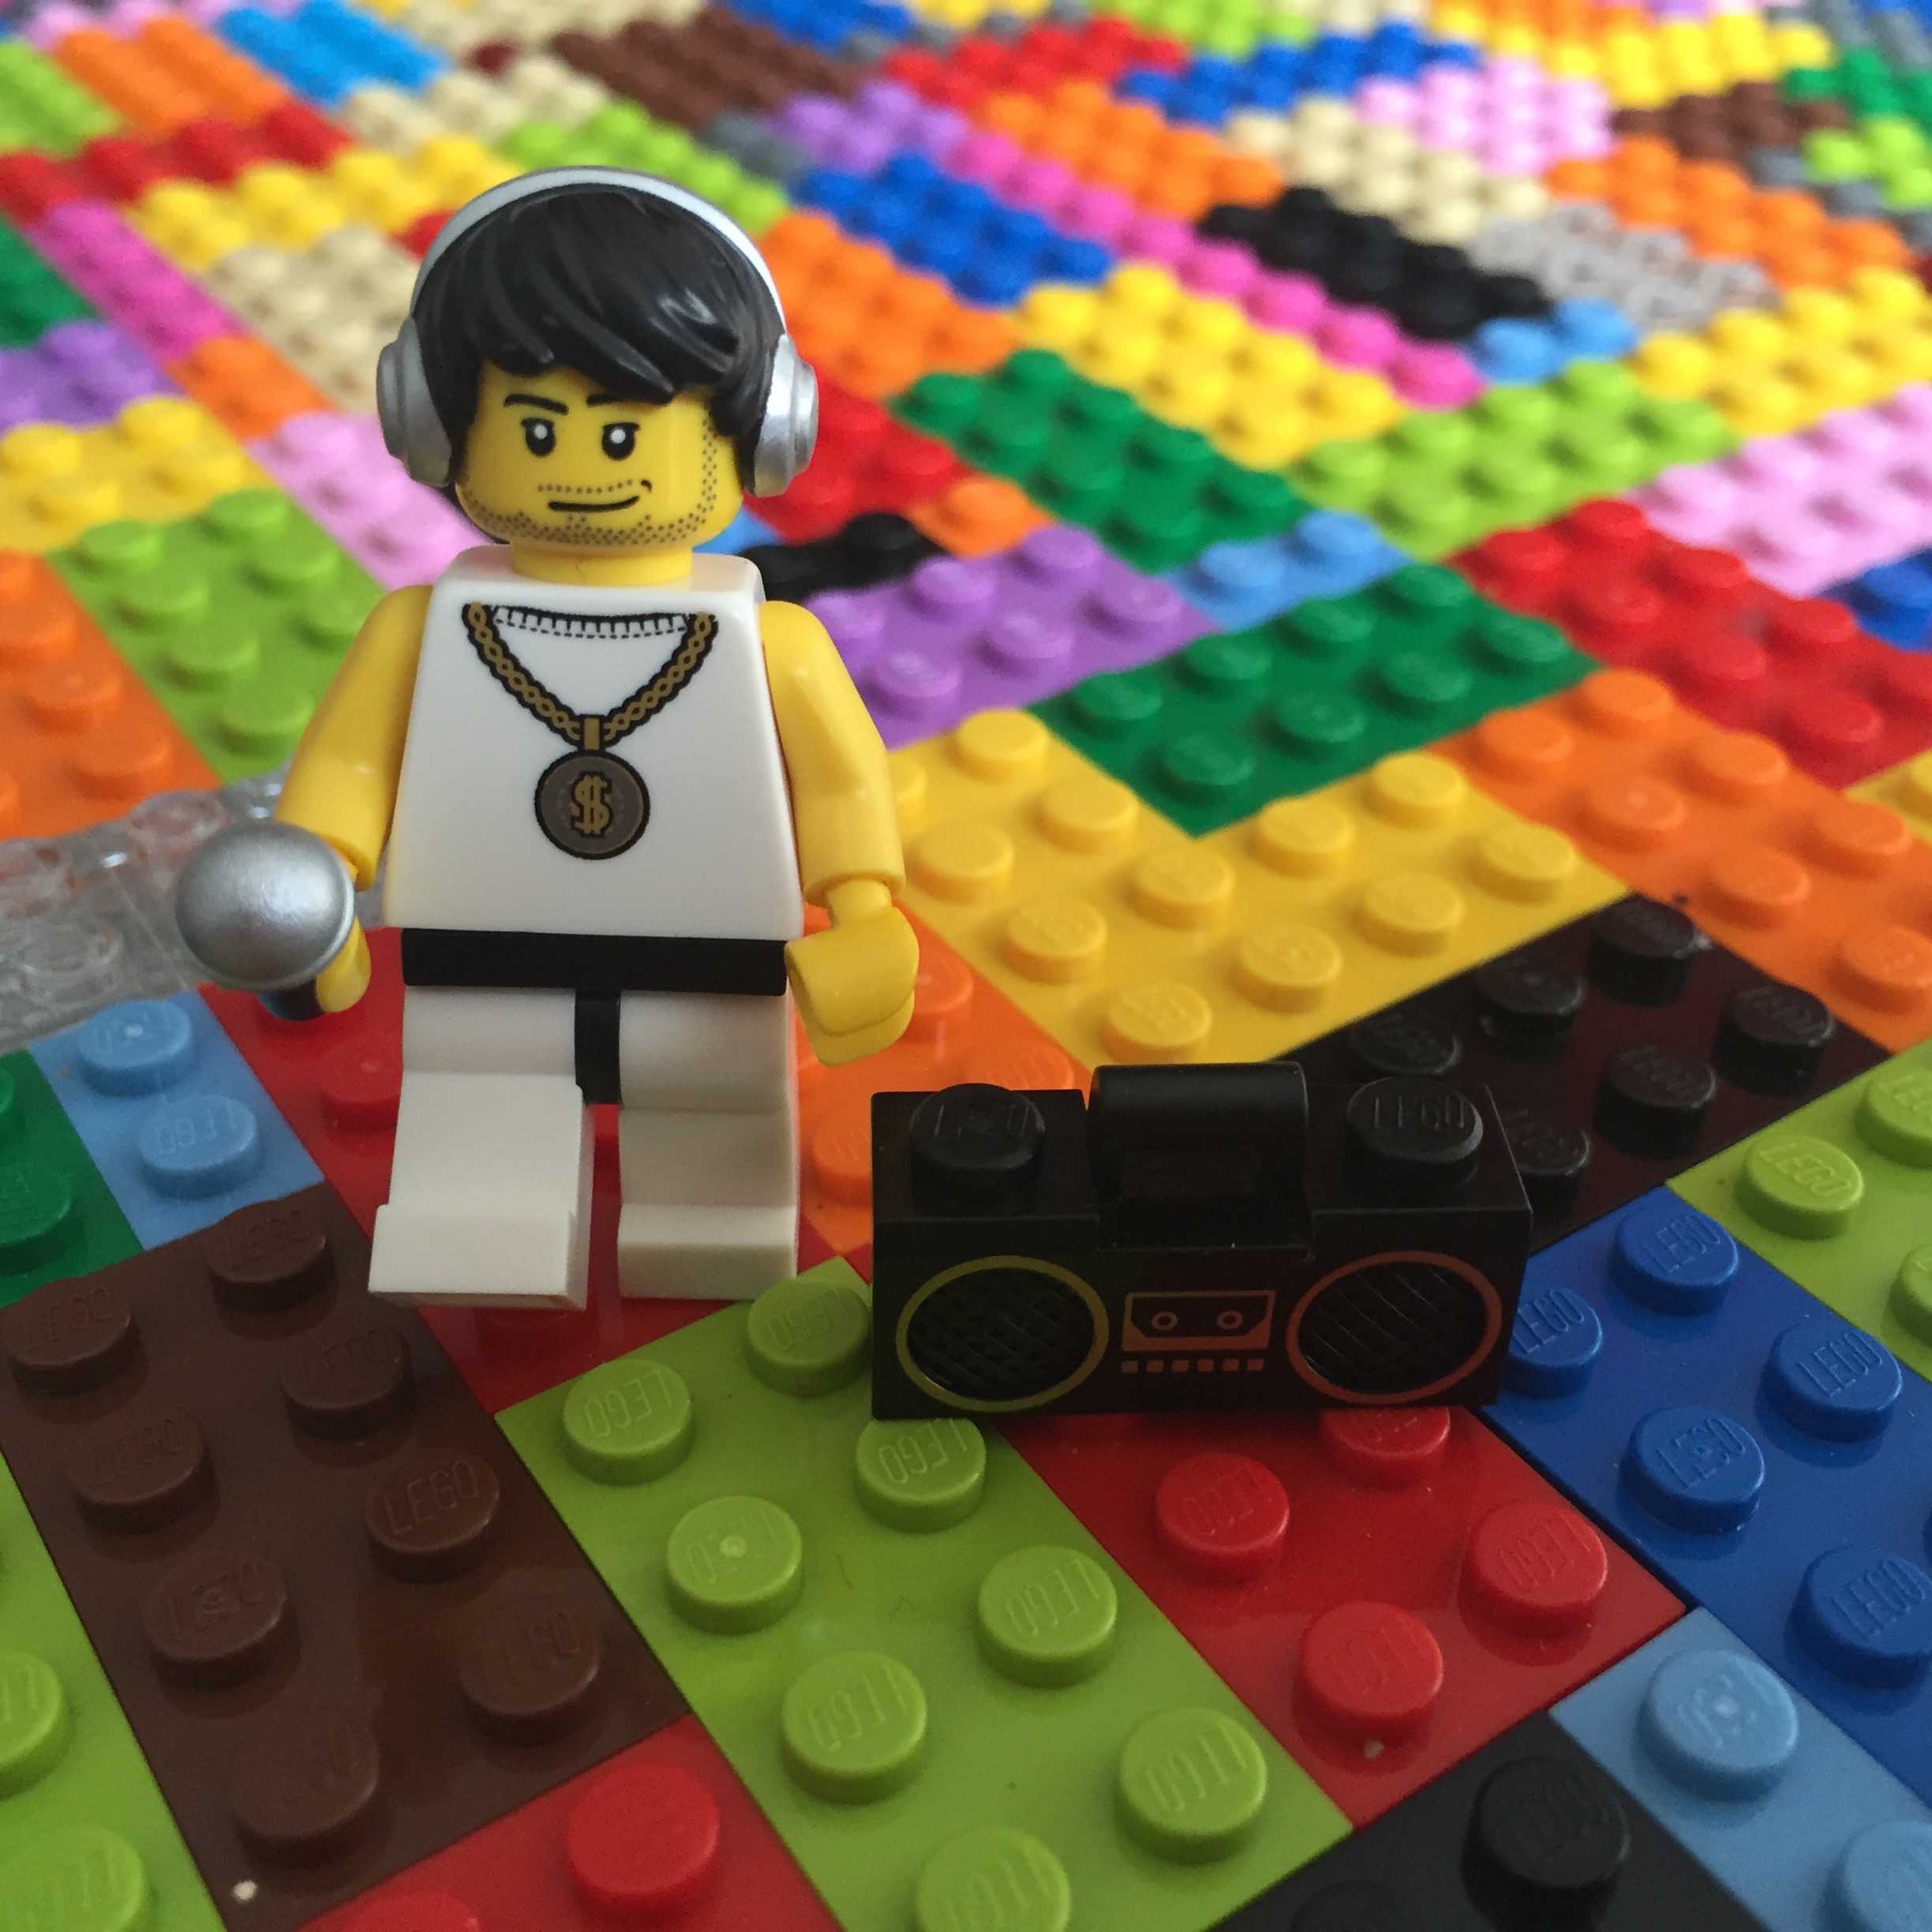 Tout un brique à brac de LEGO  Benjamin Tournay, Graphiste / Webdesigner  Freelance